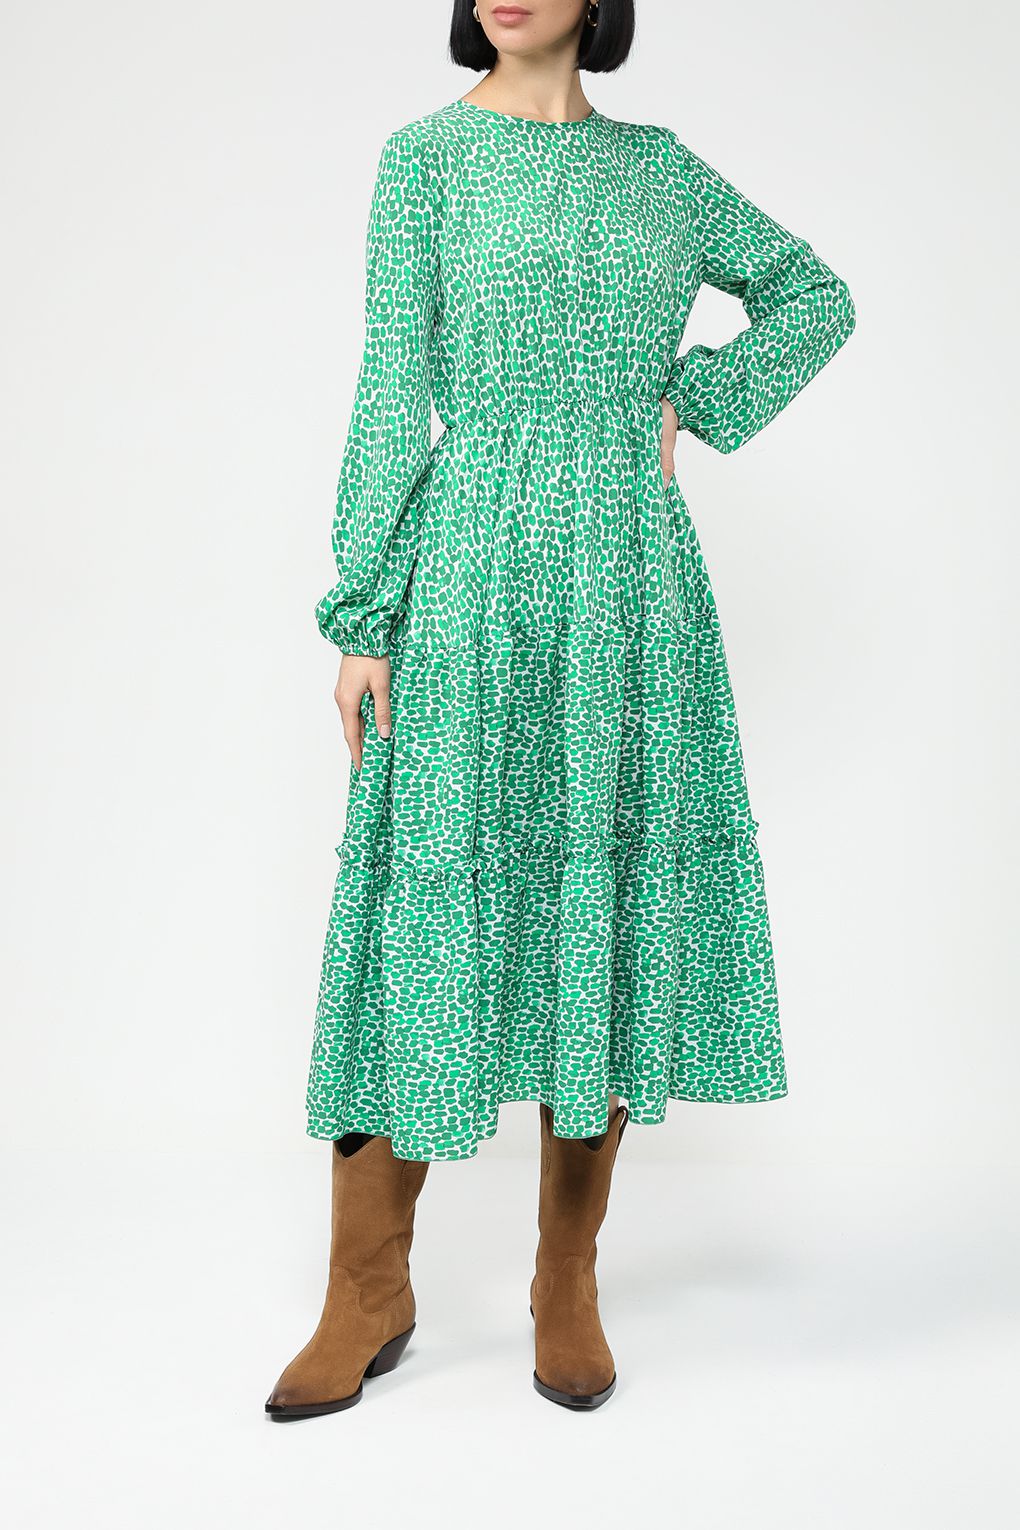 Платье женское BELUCCI BL23075366-004 зеленый зеленое M